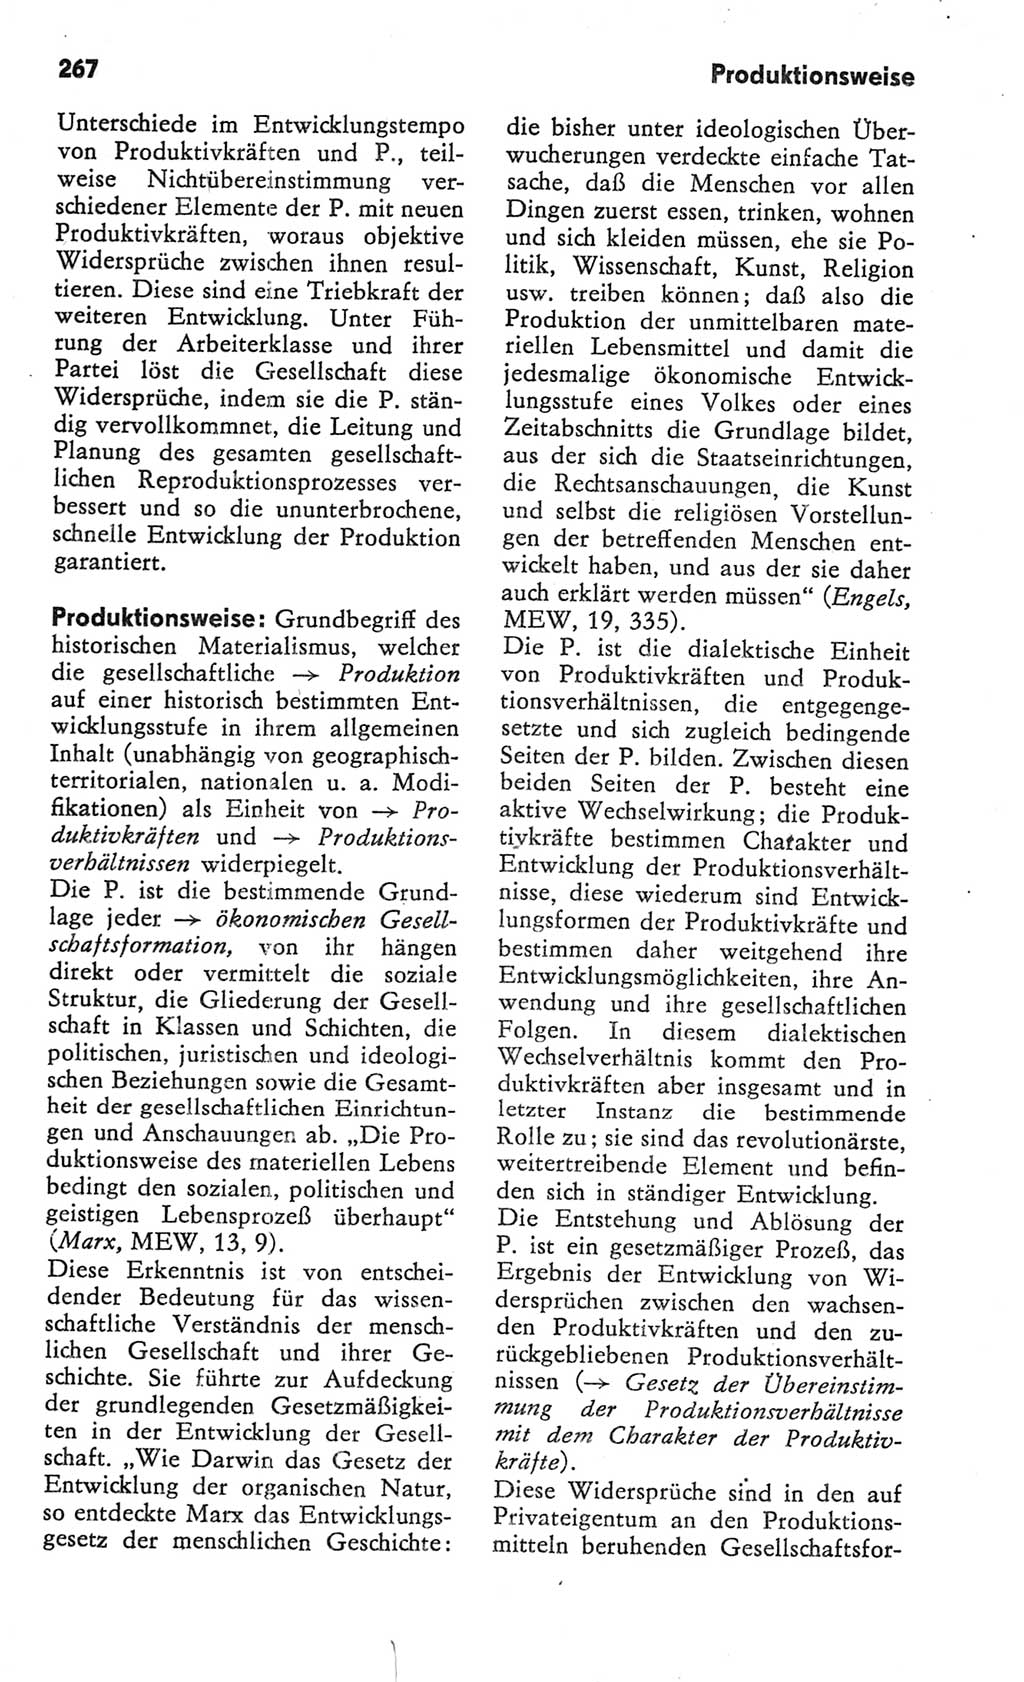 Kleines Wörterbuch der marxistisch-leninistischen Philosophie [Deutsche Demokratische Republik (DDR)] 1982, Seite 267 (Kl. Wb. ML Phil. DDR 1982, S. 267)